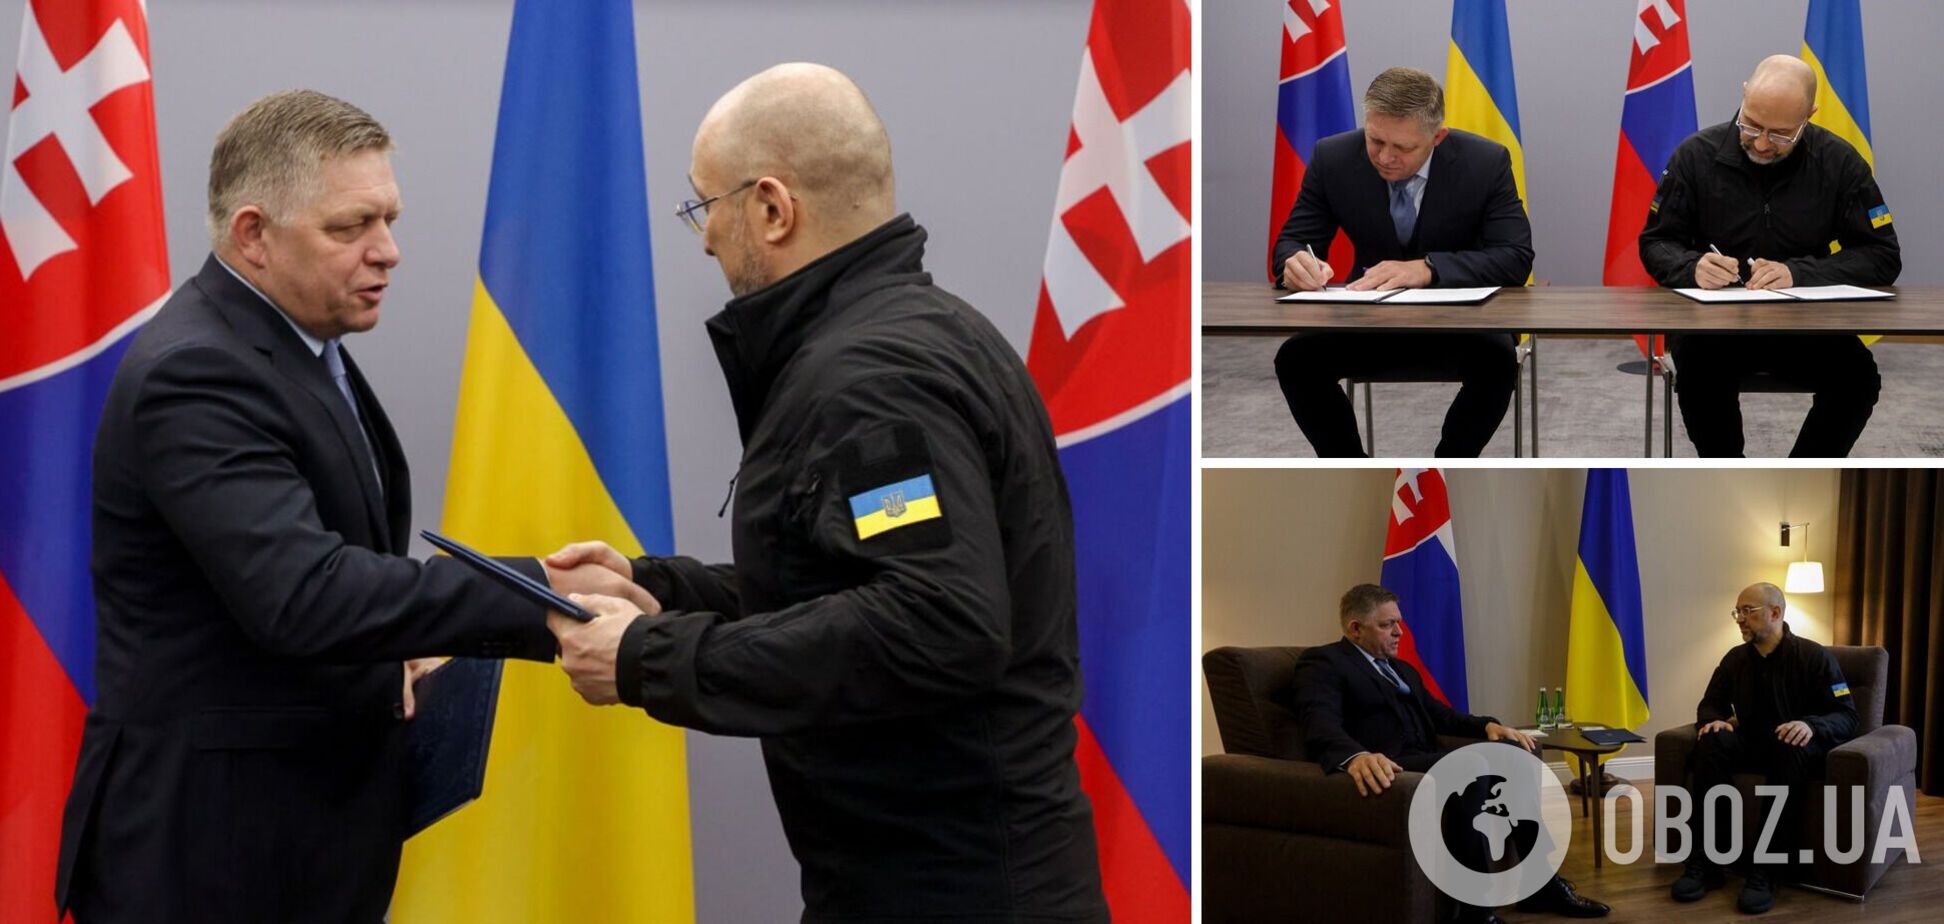 Словакия не будет блокировать покупку Украиной оружия: Фицо прибыл с визитом в Ужгород, достигнуты важные договоренности. Фото и видео